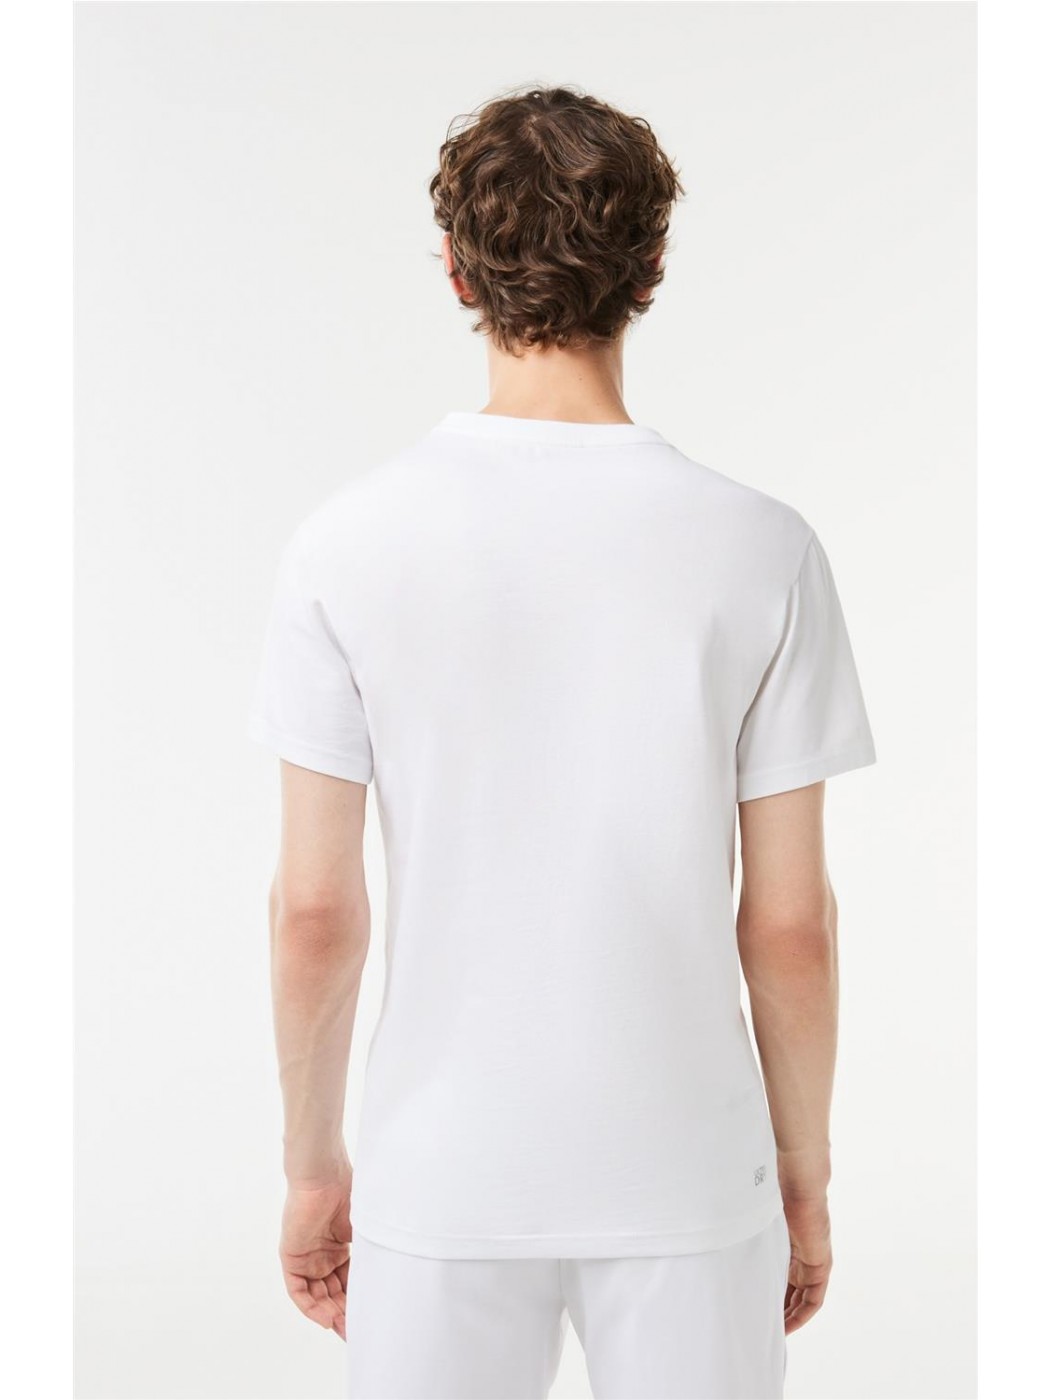 Camiseta Lacoste Blanca Con Degradé Para Hombre